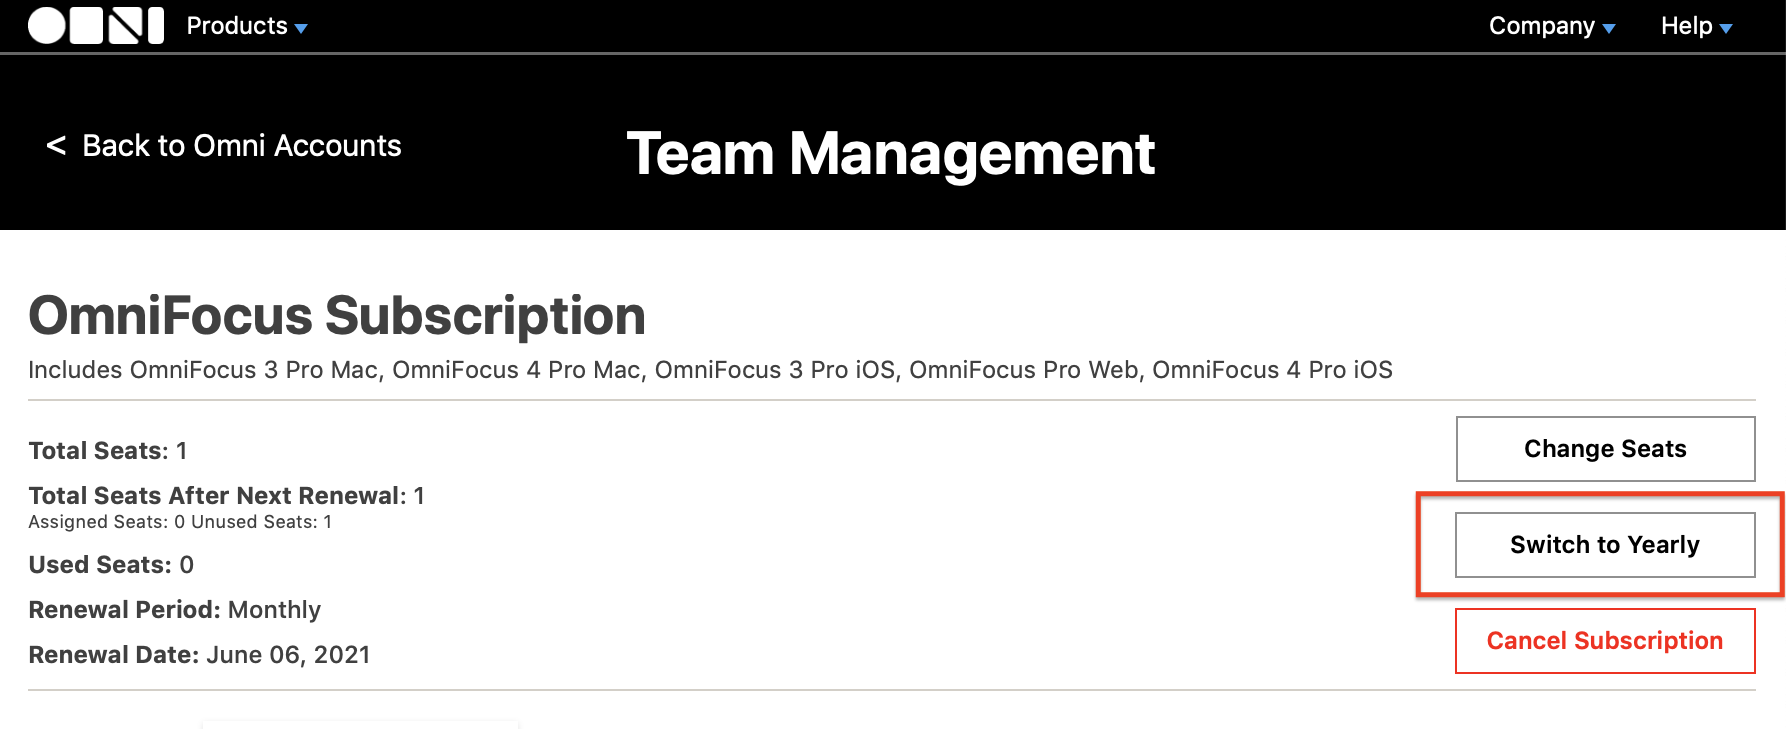 Managing Team Members in Omni Accounts